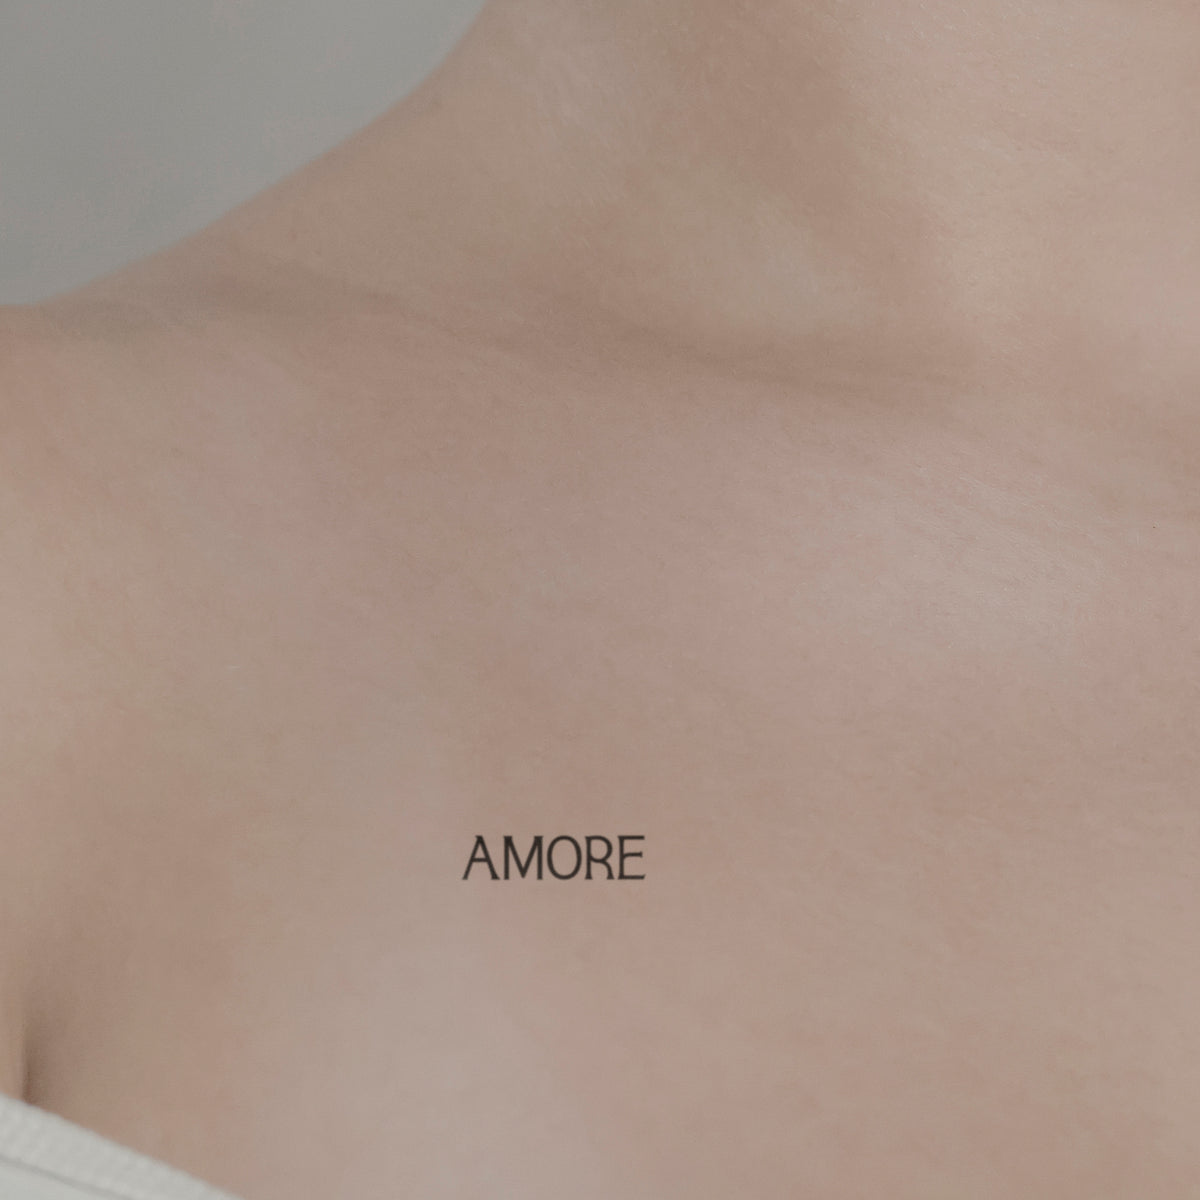 Schriftzug Tattoo AMORE von minink, der Marke für temporäre Tattoos.